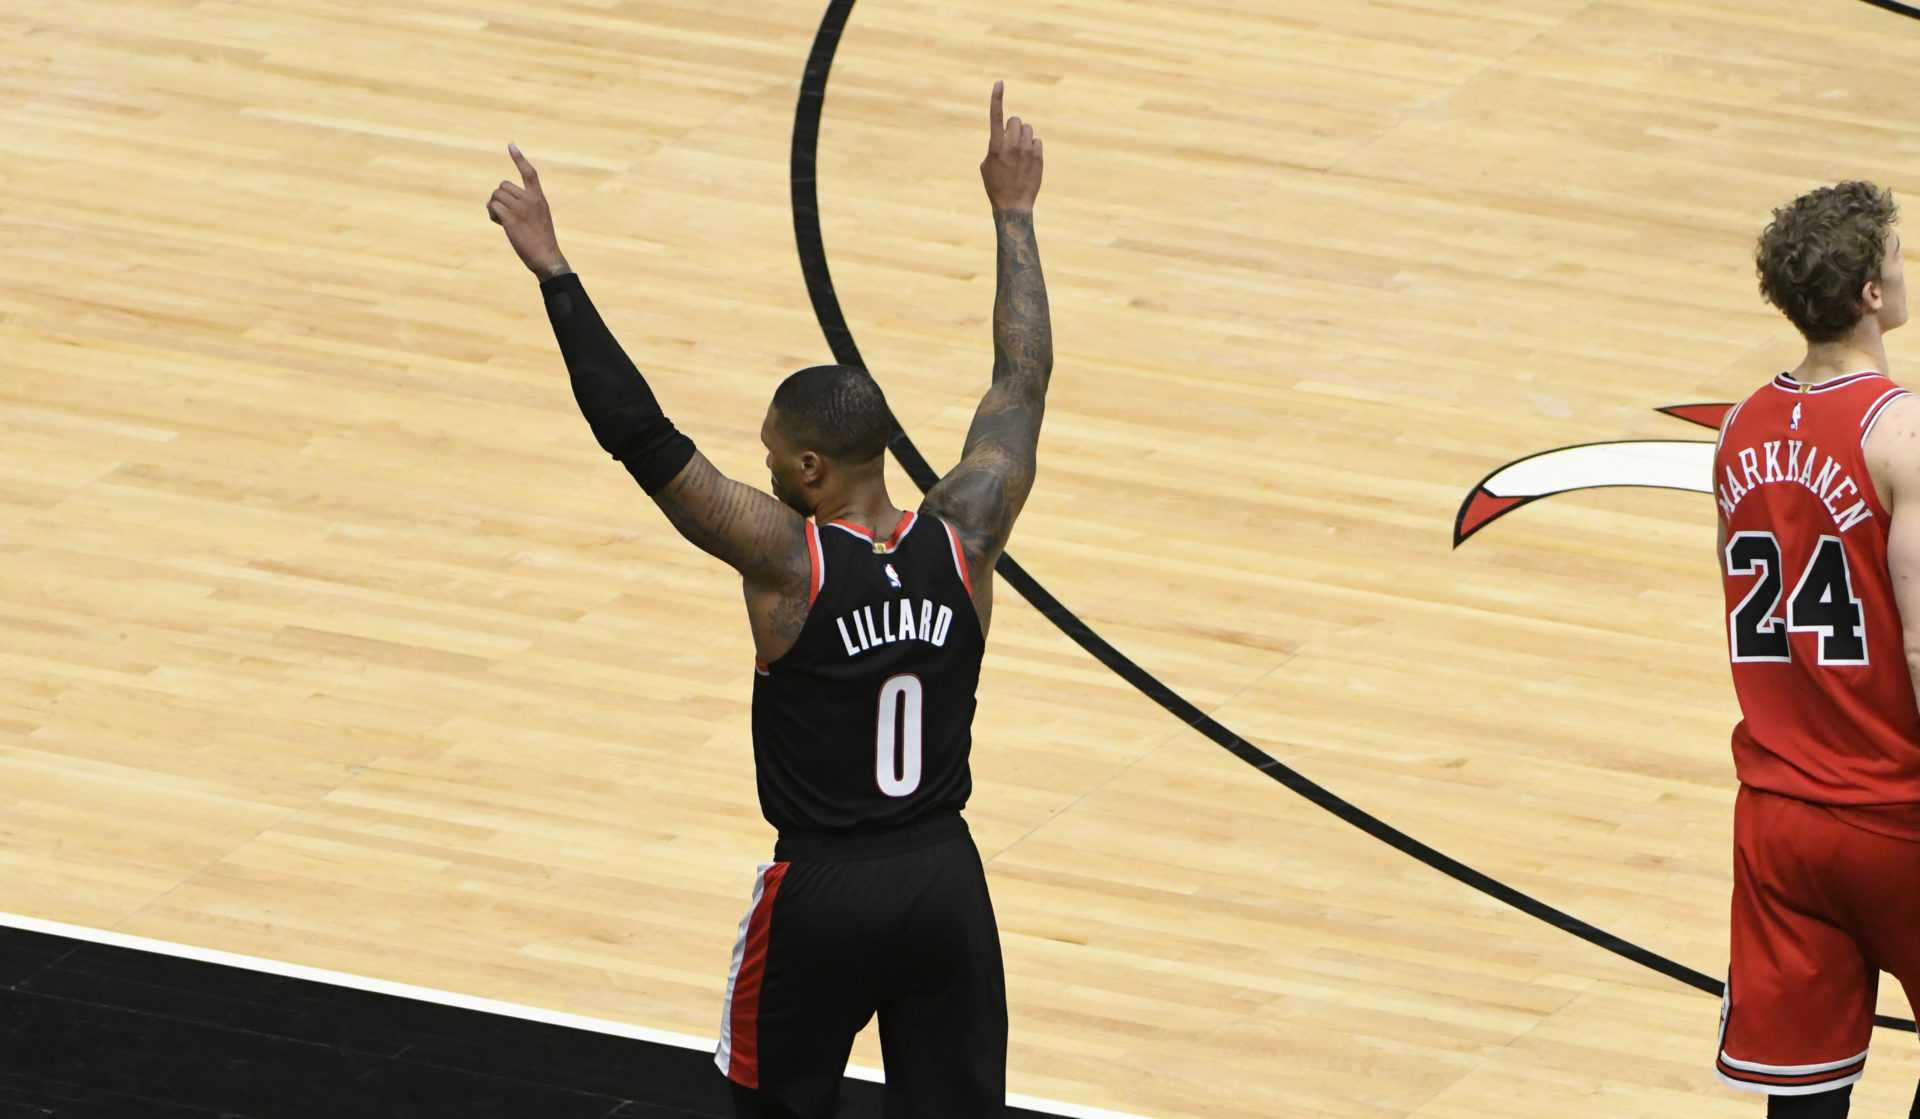 Un analyste de la NBA explique pourquoi Damian Lillard et CJ McCollum ne seront jamais champions ensemble